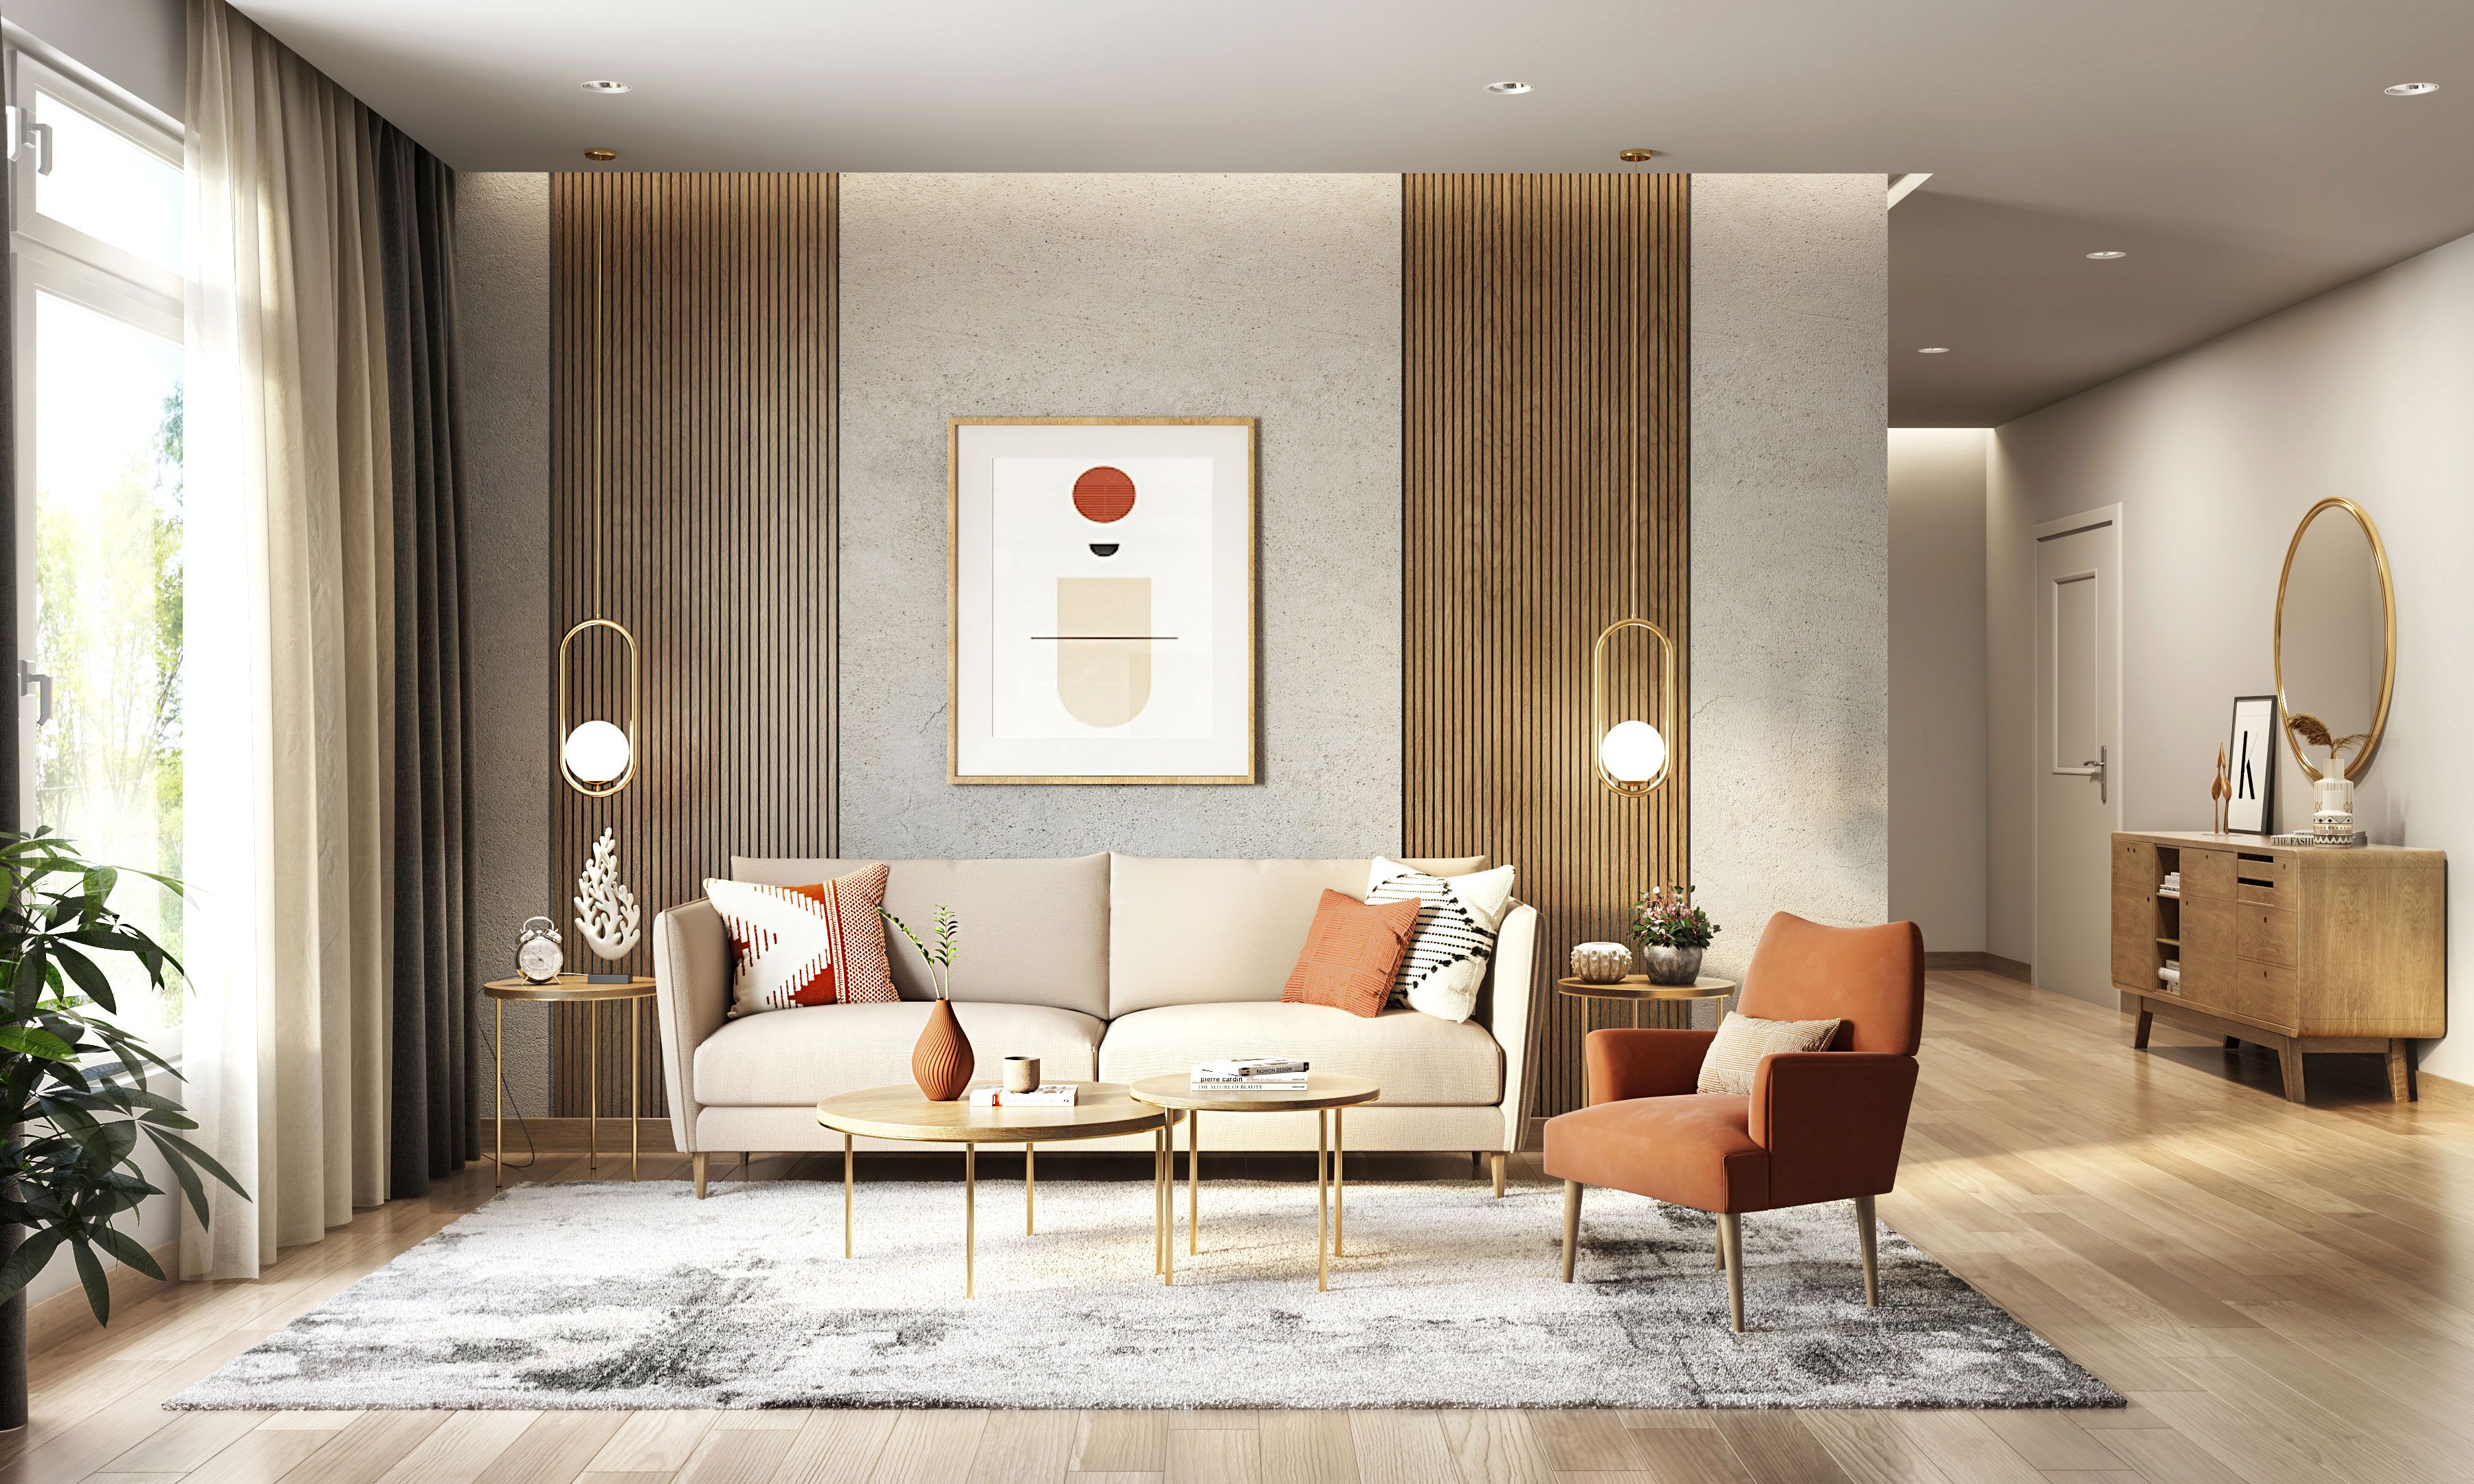 Fawn Living Room Interior Design - Interior Decor Ideas For Living Room